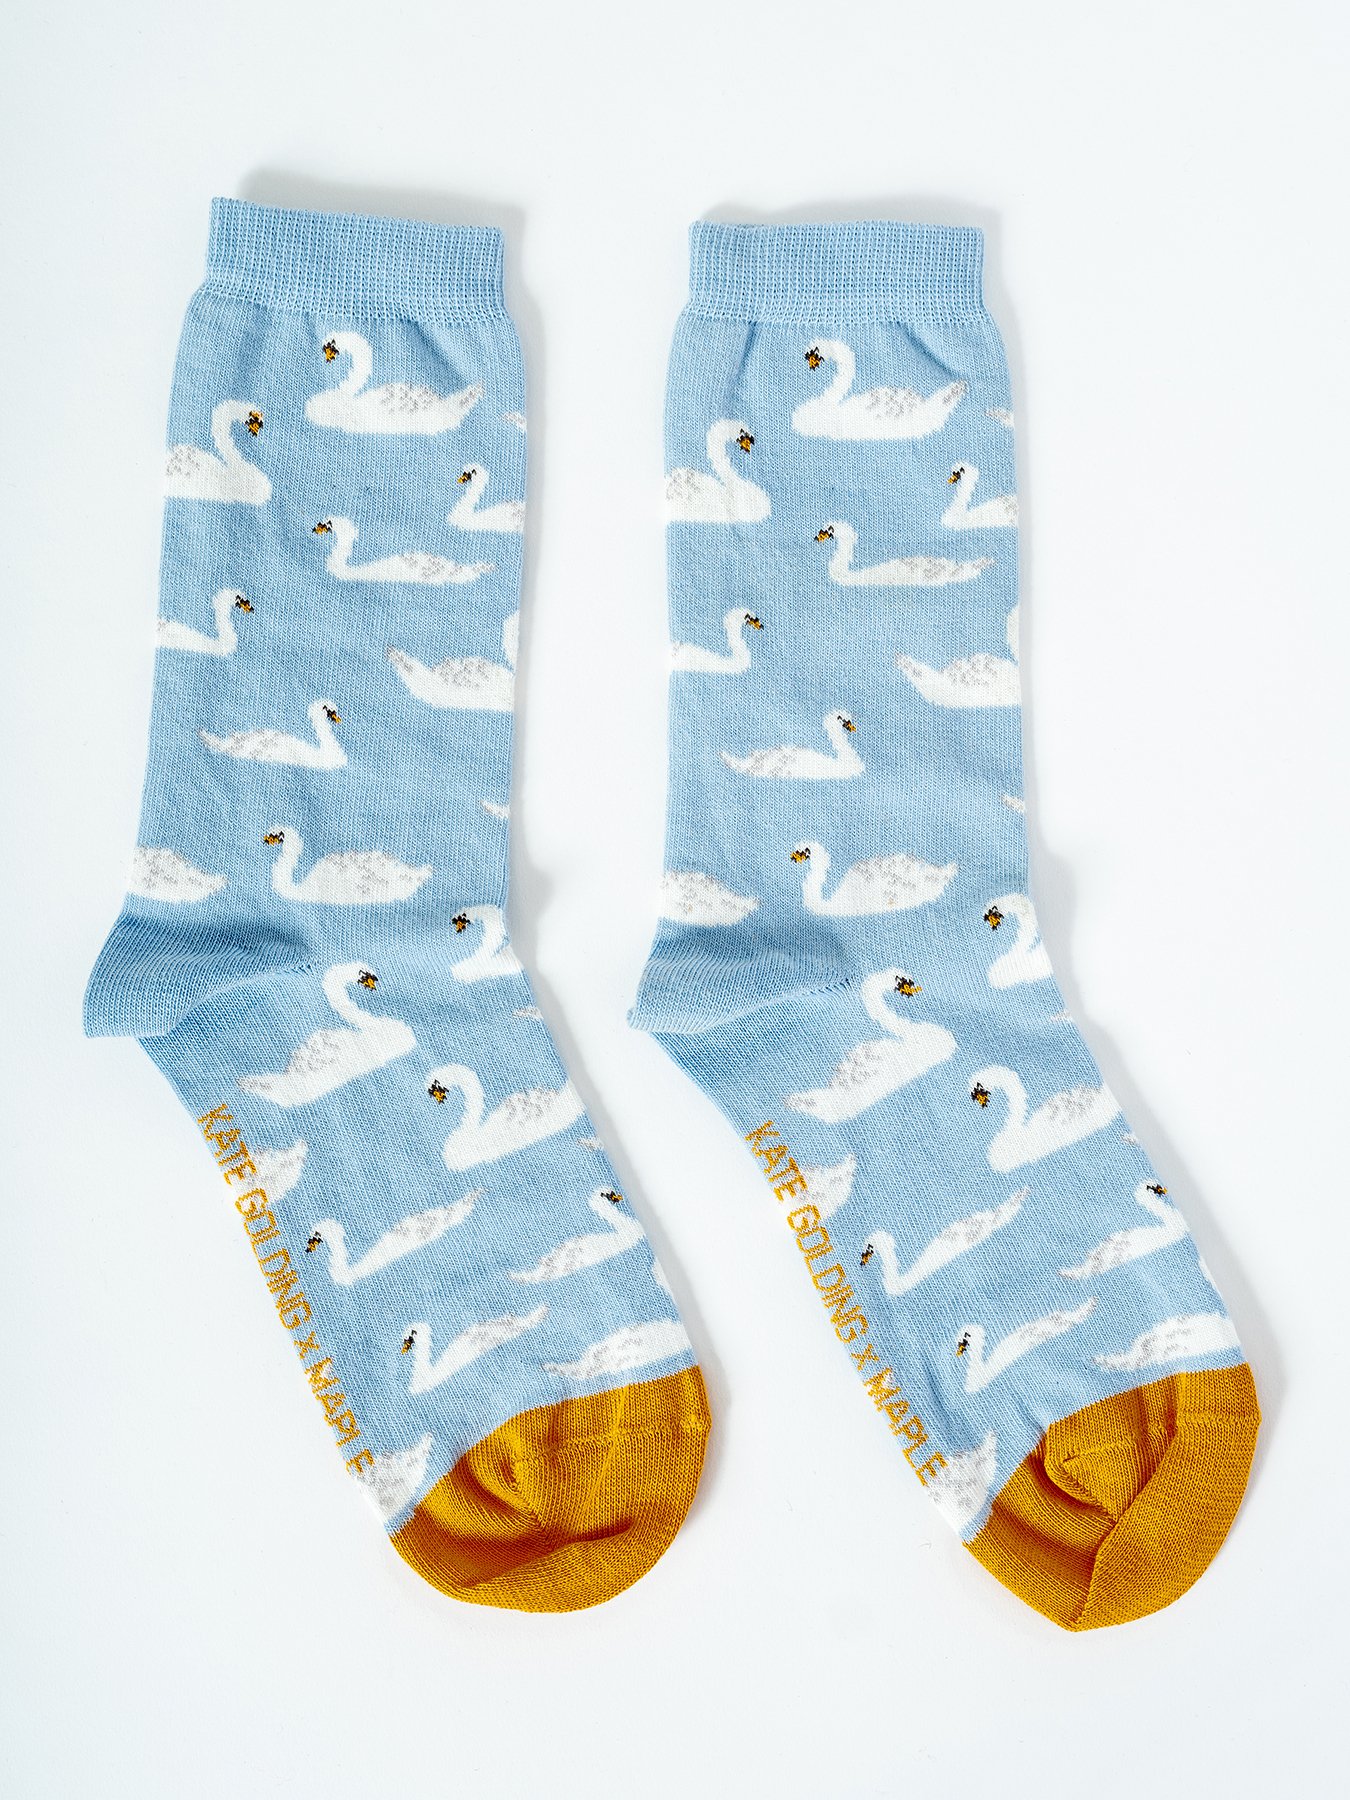 Kate Golding x Maple socks